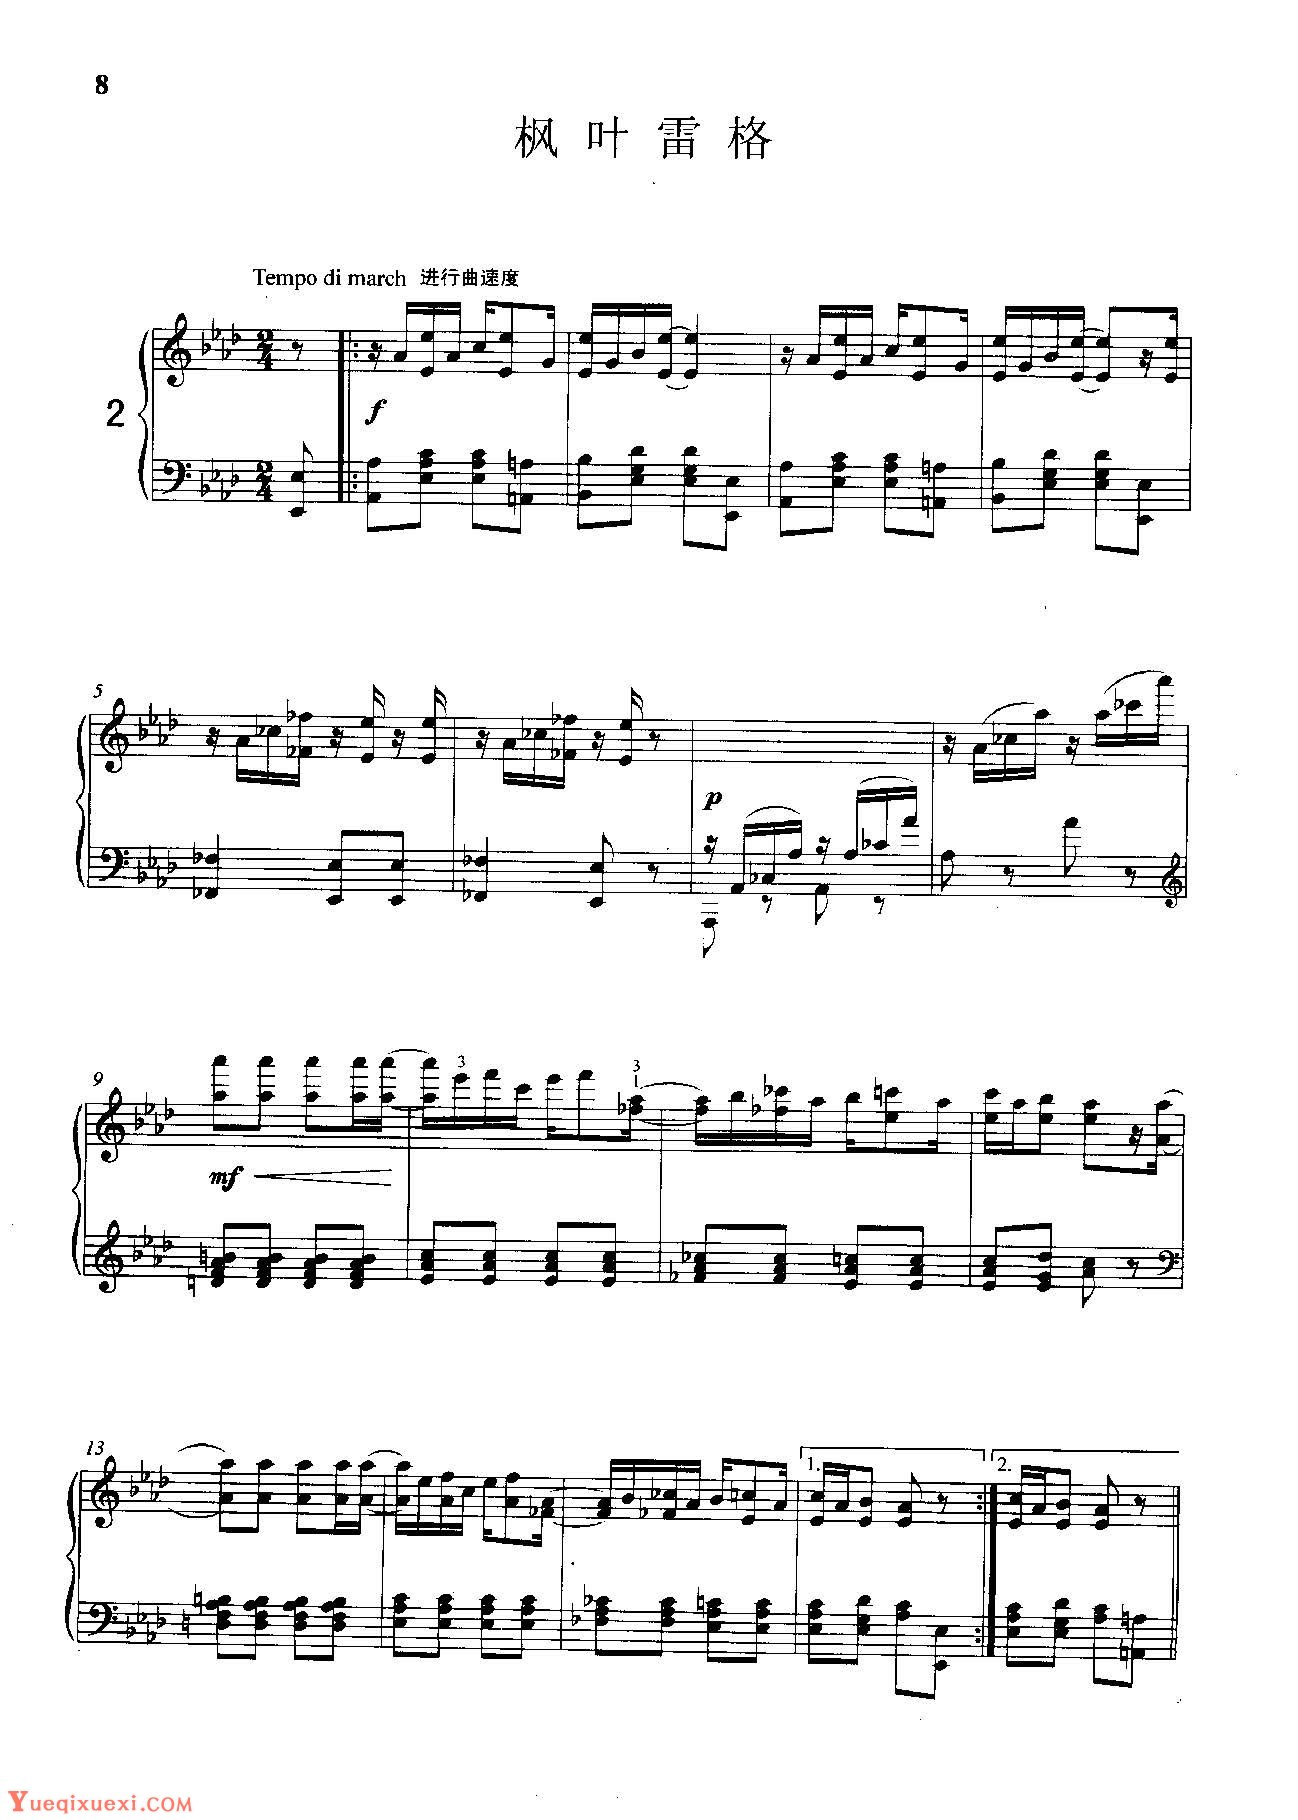 雷格泰姆钢琴乐谱《枫叶雷格》雷格泰姆之王斯科特·乔普林